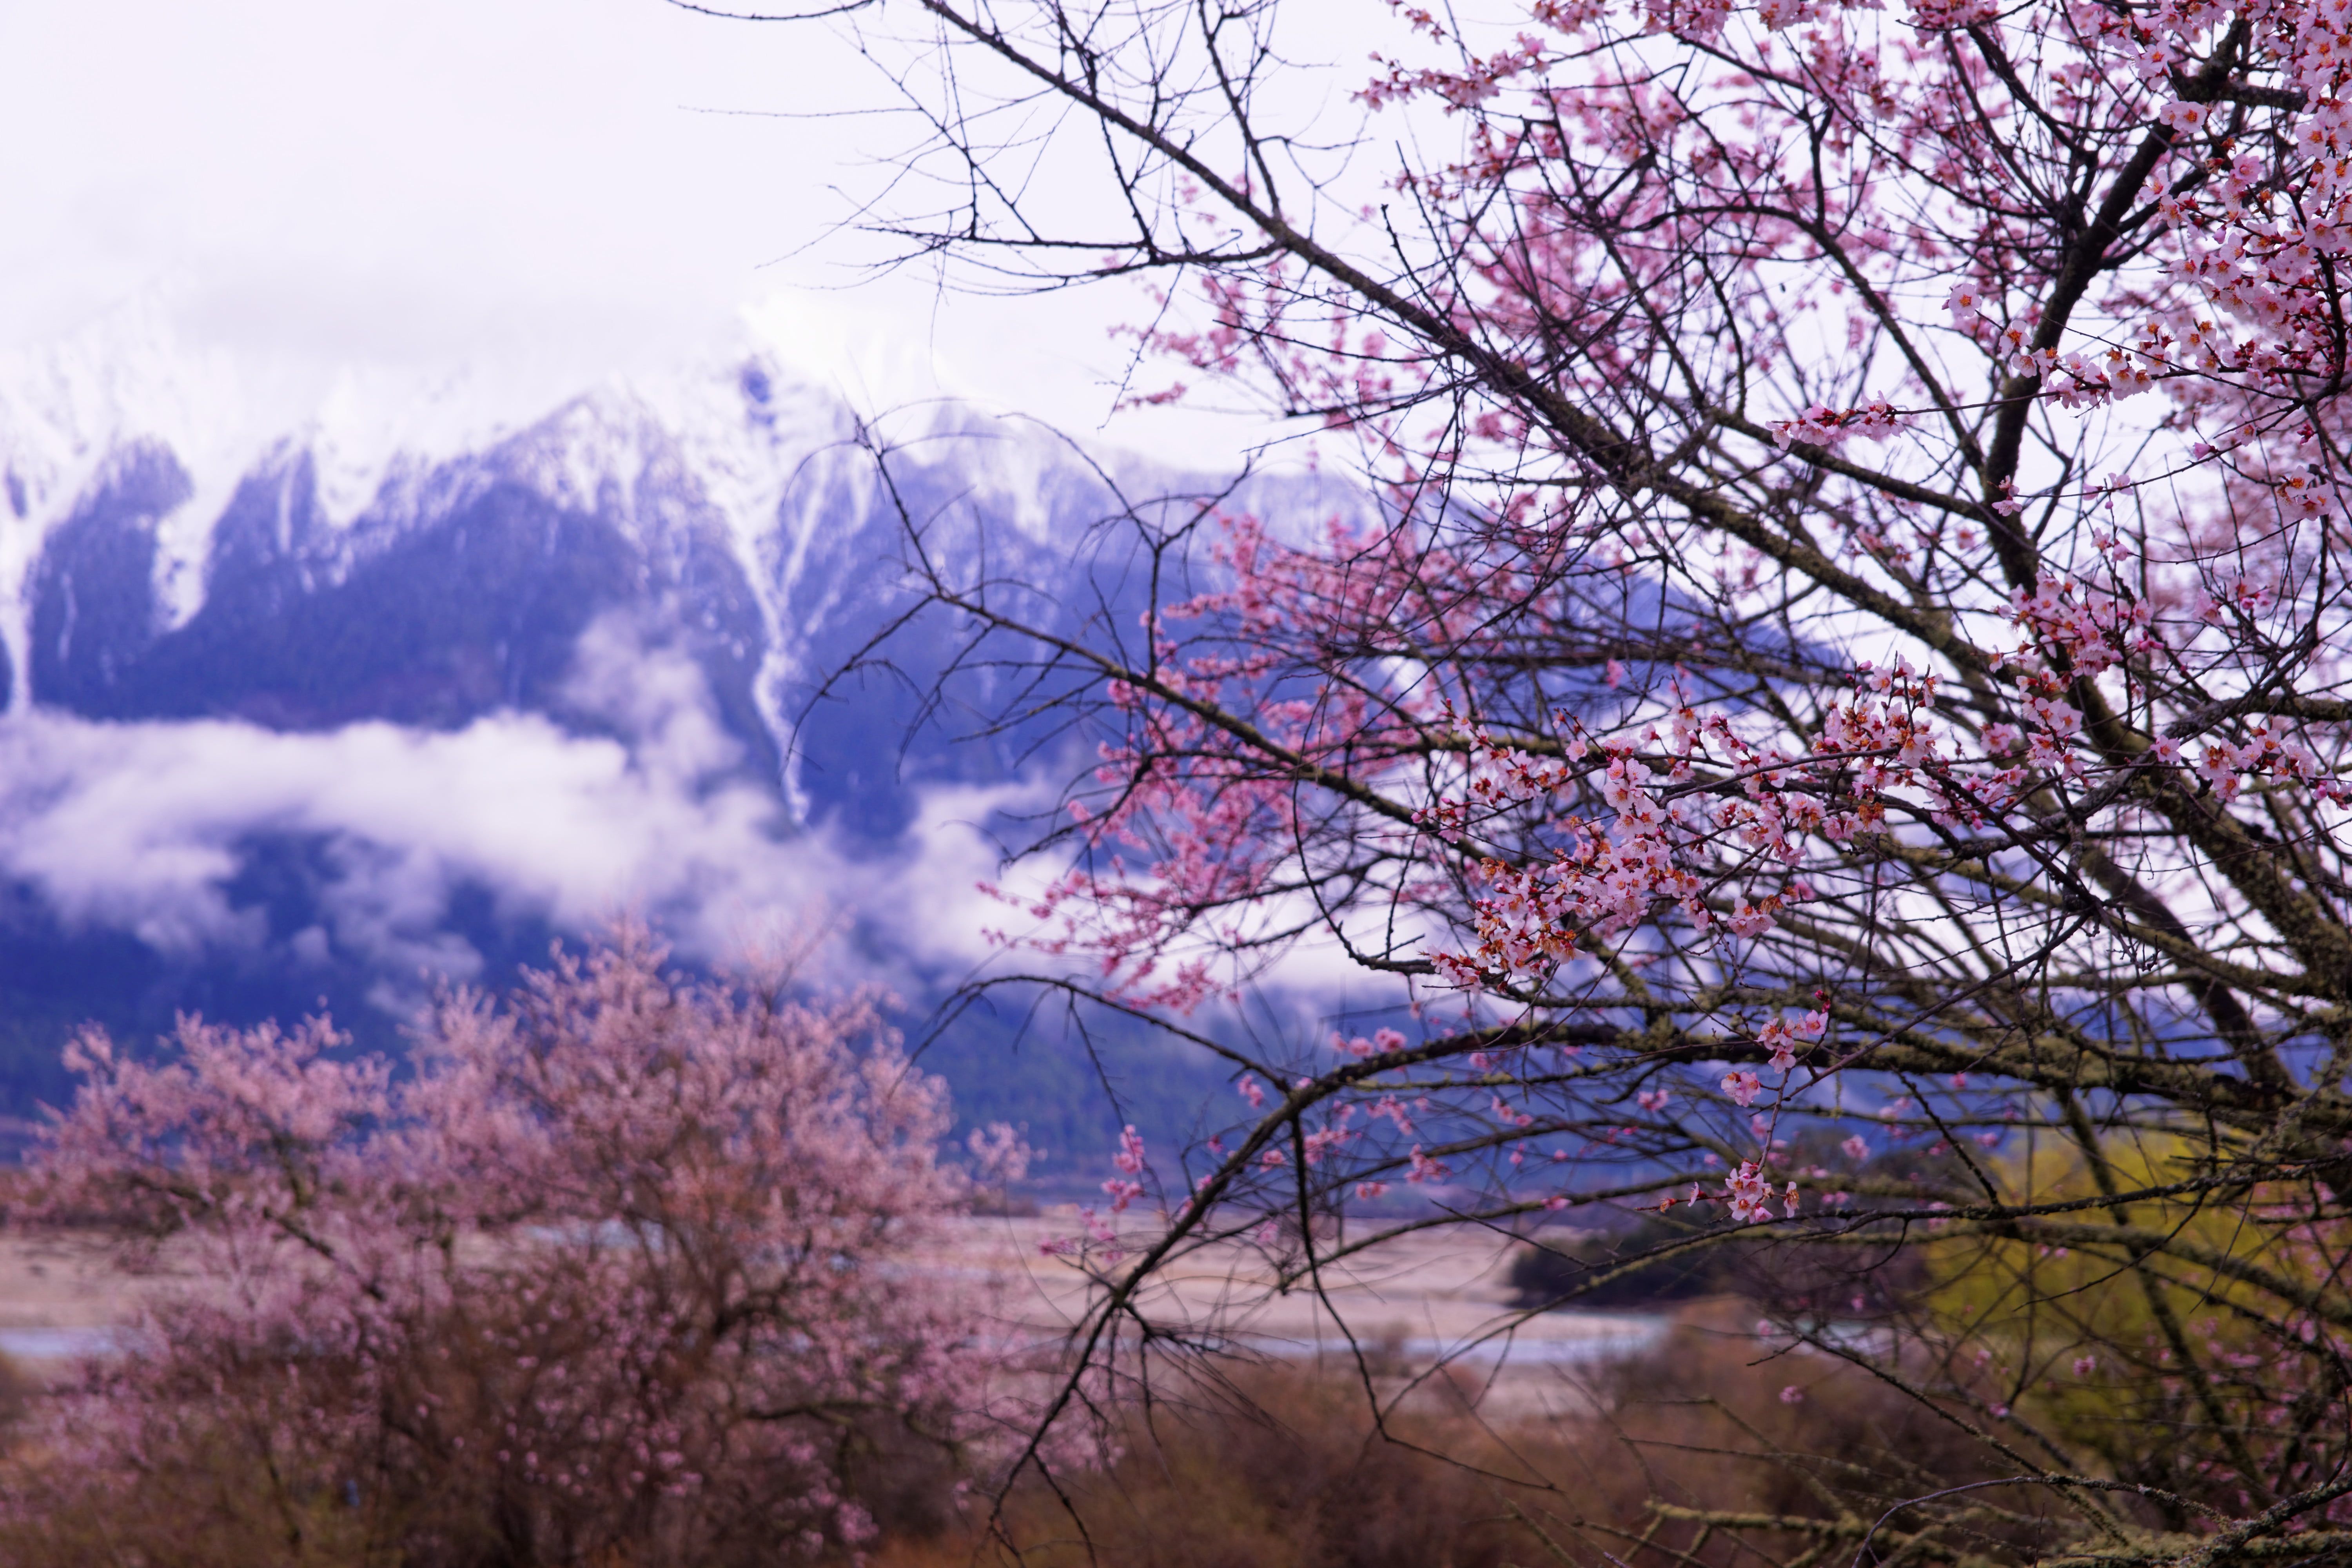 والپیپر منحصر به فرد و دیدنی از شکوفه های درخت هلو 